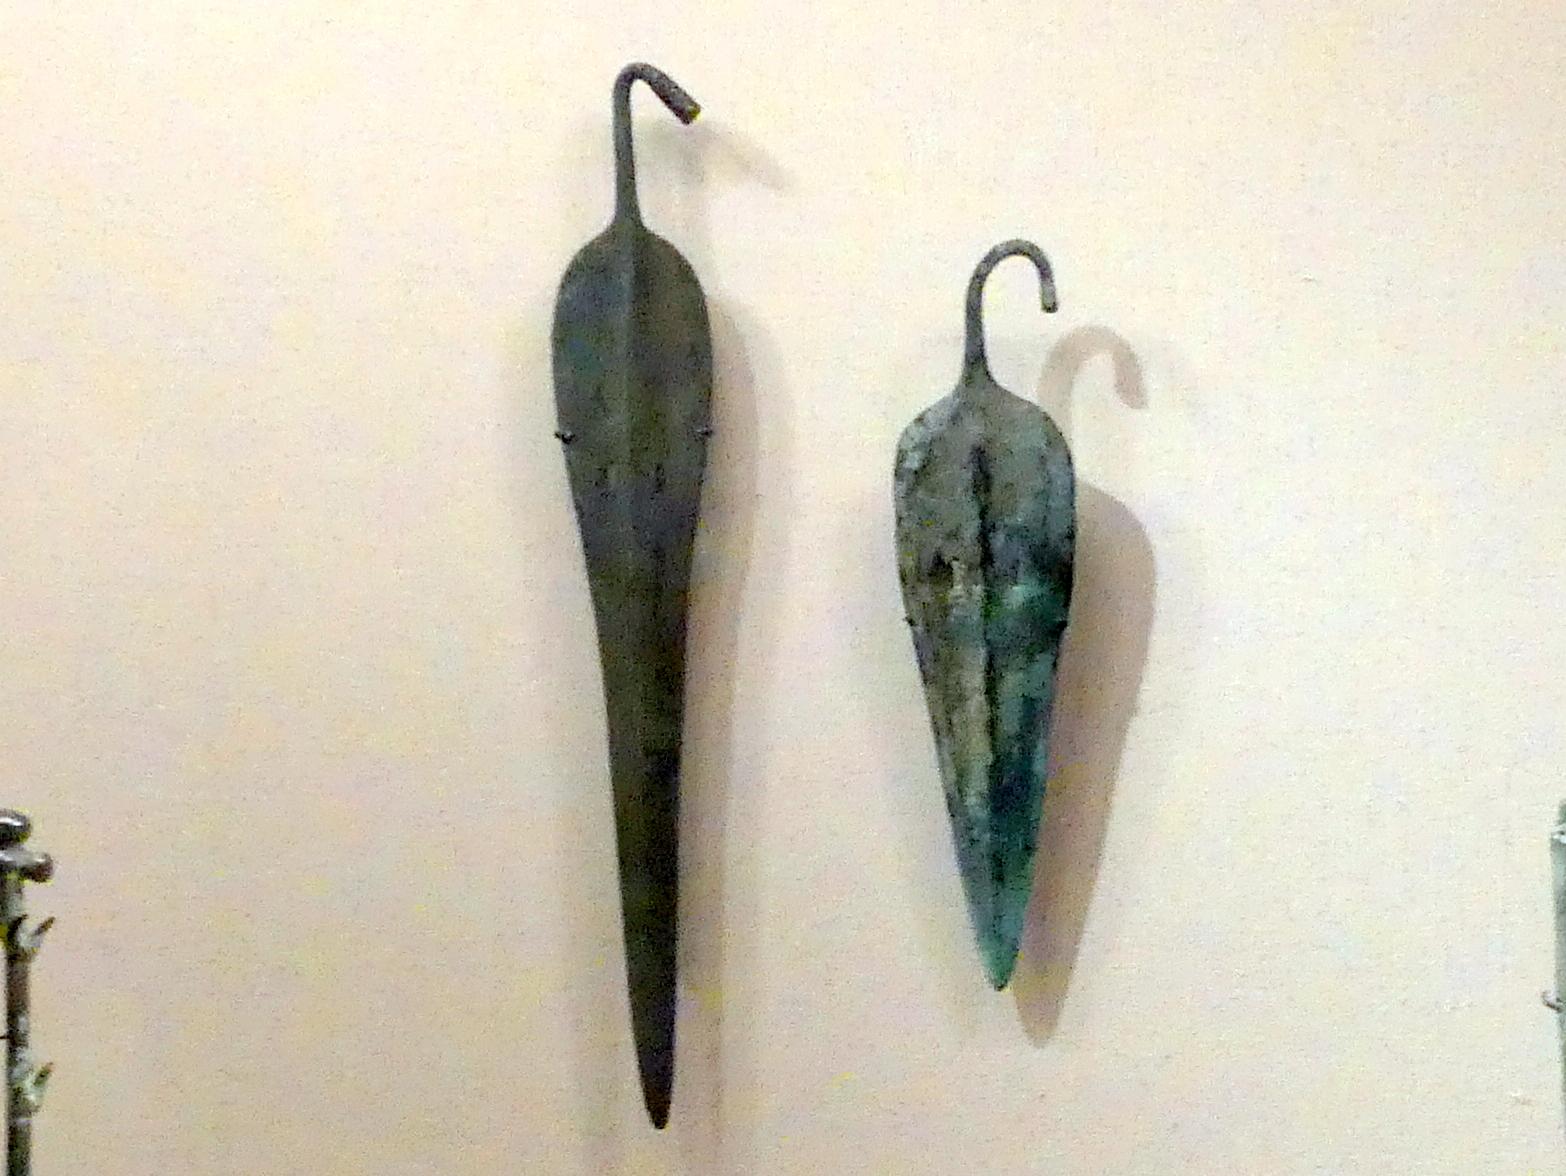 Speerspitzen mit gebogenem Zapfen und geschlitzter Klinge, Frühe Bronzezeit III, 2400 - 2000 v. Chr., 2300 - 2000 v. Chr., Bild 1/2